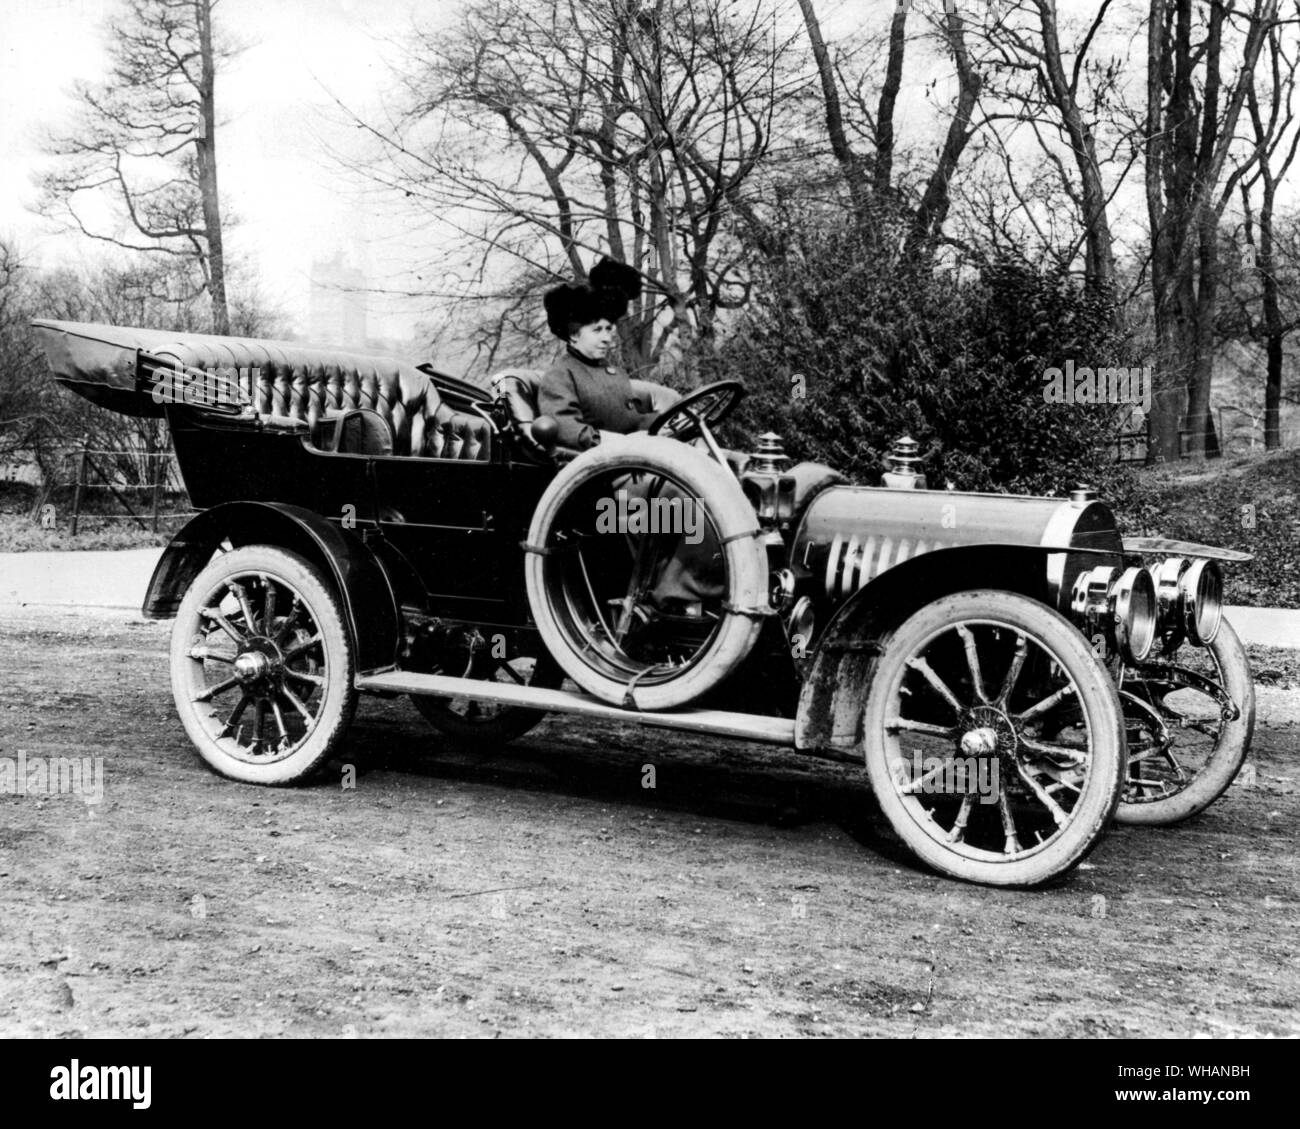 1908. Rainier.. Il Rainier automobile è stata realizzata negli Stati Uniti dal 1905 - 1911. La società ha iniziato la sua attività come Ranieri Azienda e fabbricati in Elyria, Ohio da 1905 - 1907. Ranieri è stato stabilito per la costruzione di alta potenza a quattro cilindri touring car. Essa ha aggiunto una grande fabbrica in Saginaw, Michigan ma è fallita nel 1907 panic. La società è stata riorganizzata come Ranieri Motor Car Company e la produzione è stata effettuata solo a Saginaw da 1907 - 1911. .. Il primo Ranieri era un hp 22/28touring car. Nel 1906 aveva progredito per un hp 30/35motore a 4 cilindri. Dal 1908, la gamma è aumentata a tre corpo Foto Stock